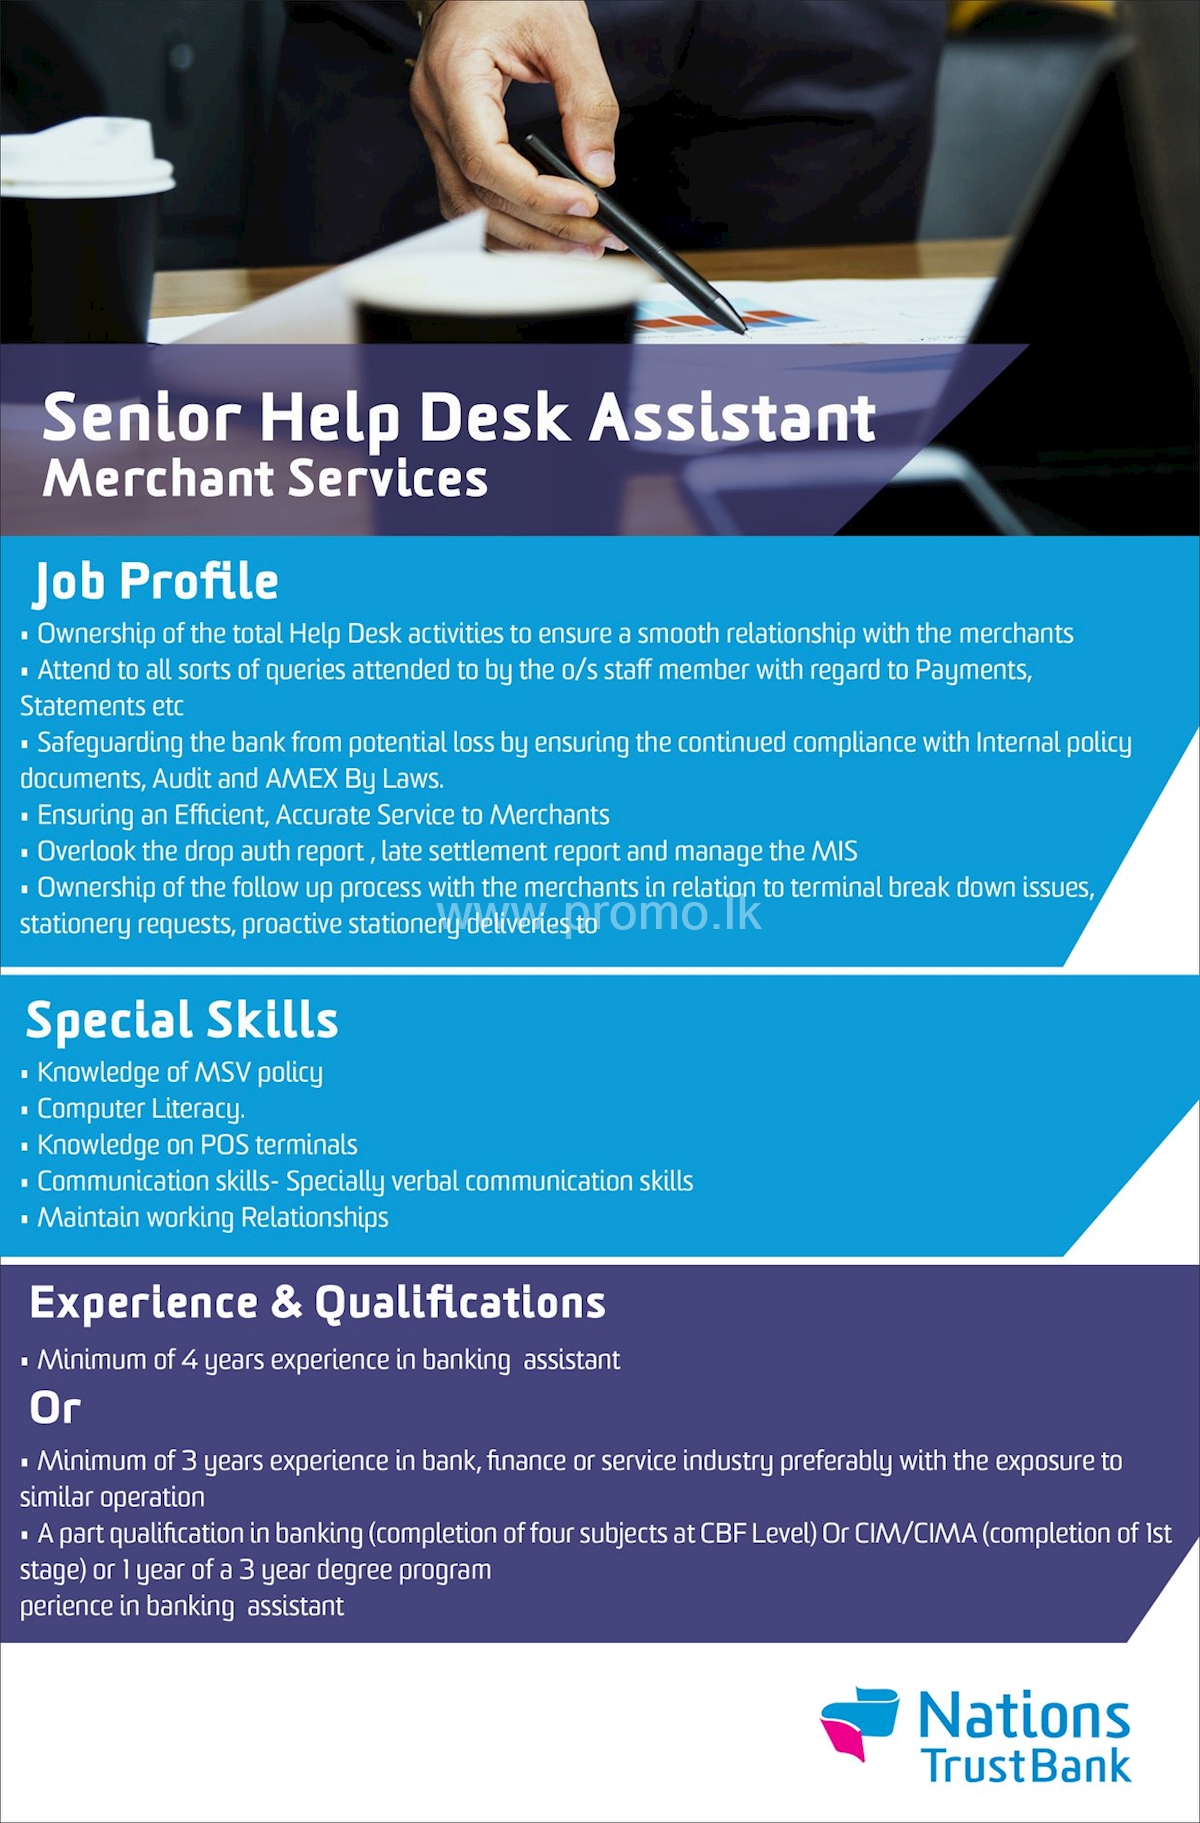 Senior Help Desk Assistant - Merchant Services